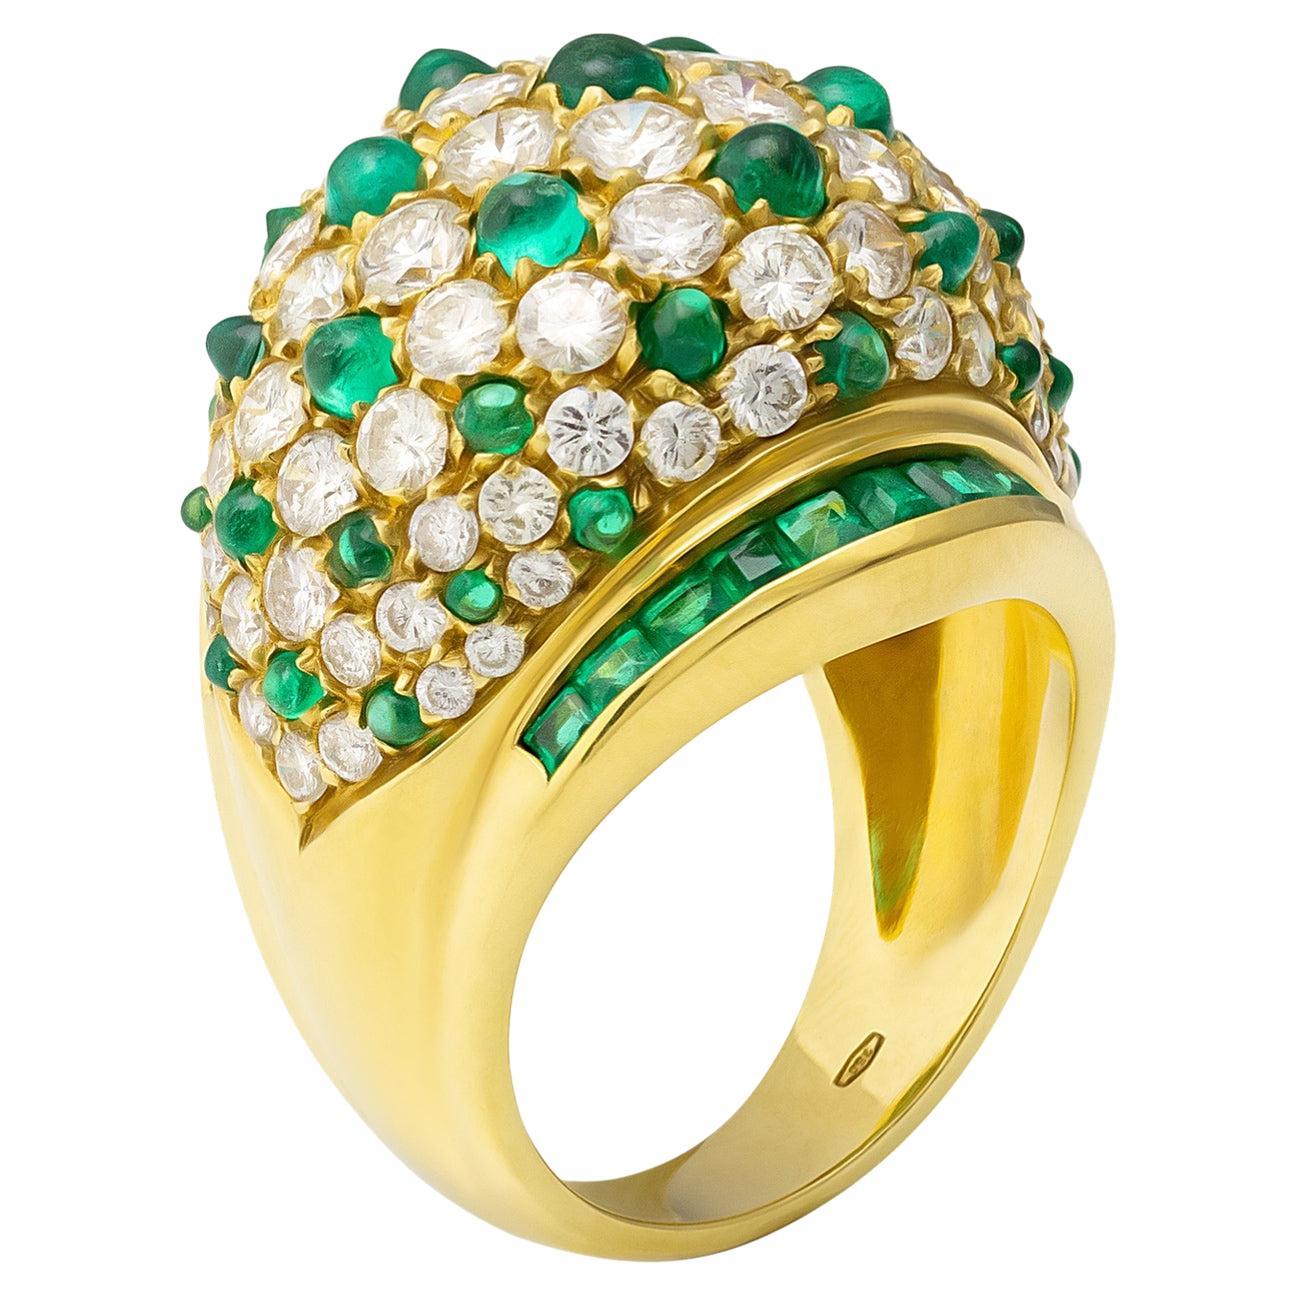 Stefan Hafner 18K Yellow Gold Diamond & Emerald Ring For Sale